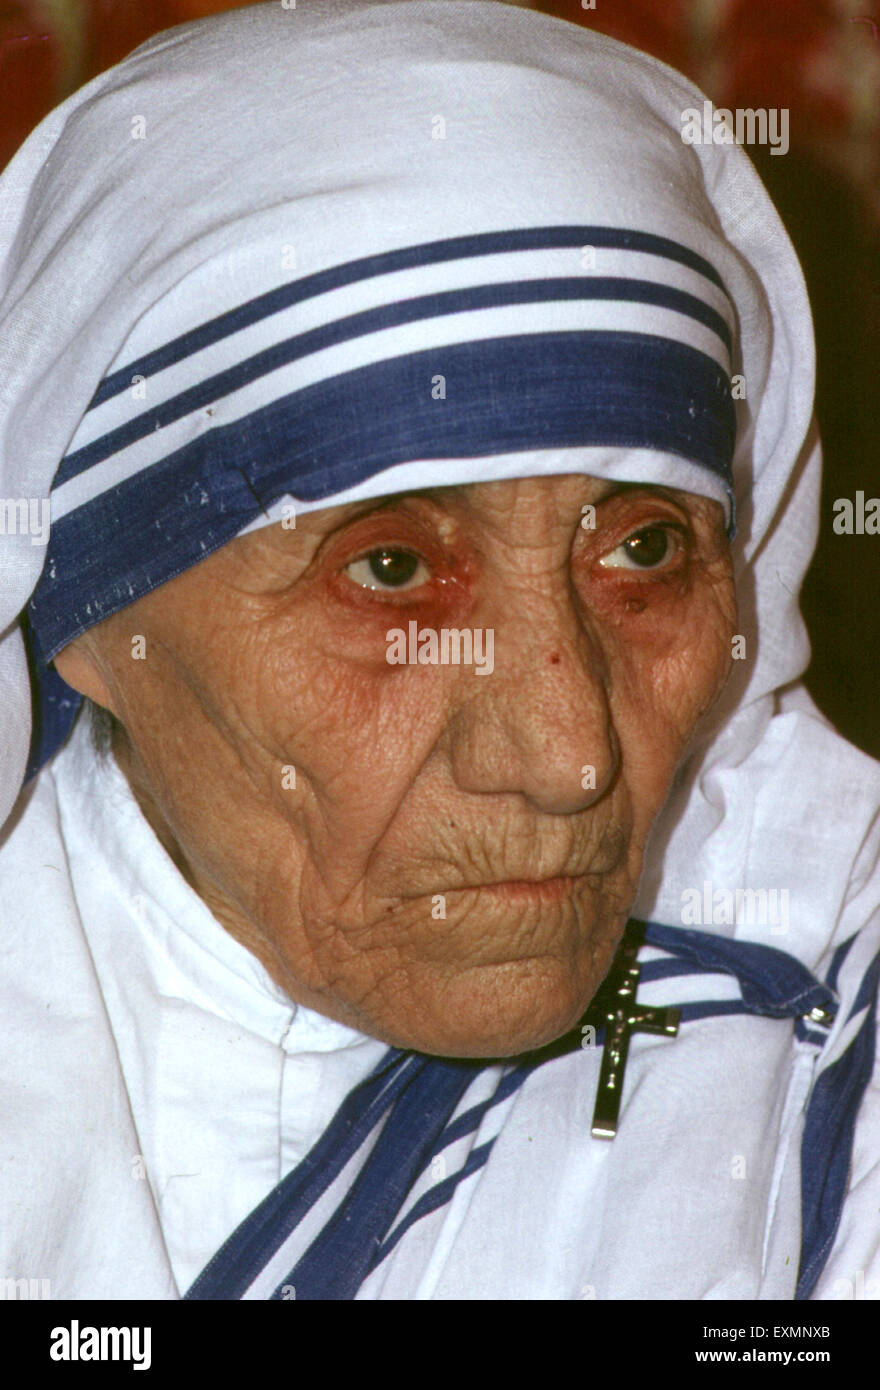 La bienheureuse Mère Teresa de Calcutta née Agnes Gonxha Bojaxhiu communément connu sous le nom de Mère Teresa de Calcutta était un Indien d'origine religieuse catholique. Banque D'Images